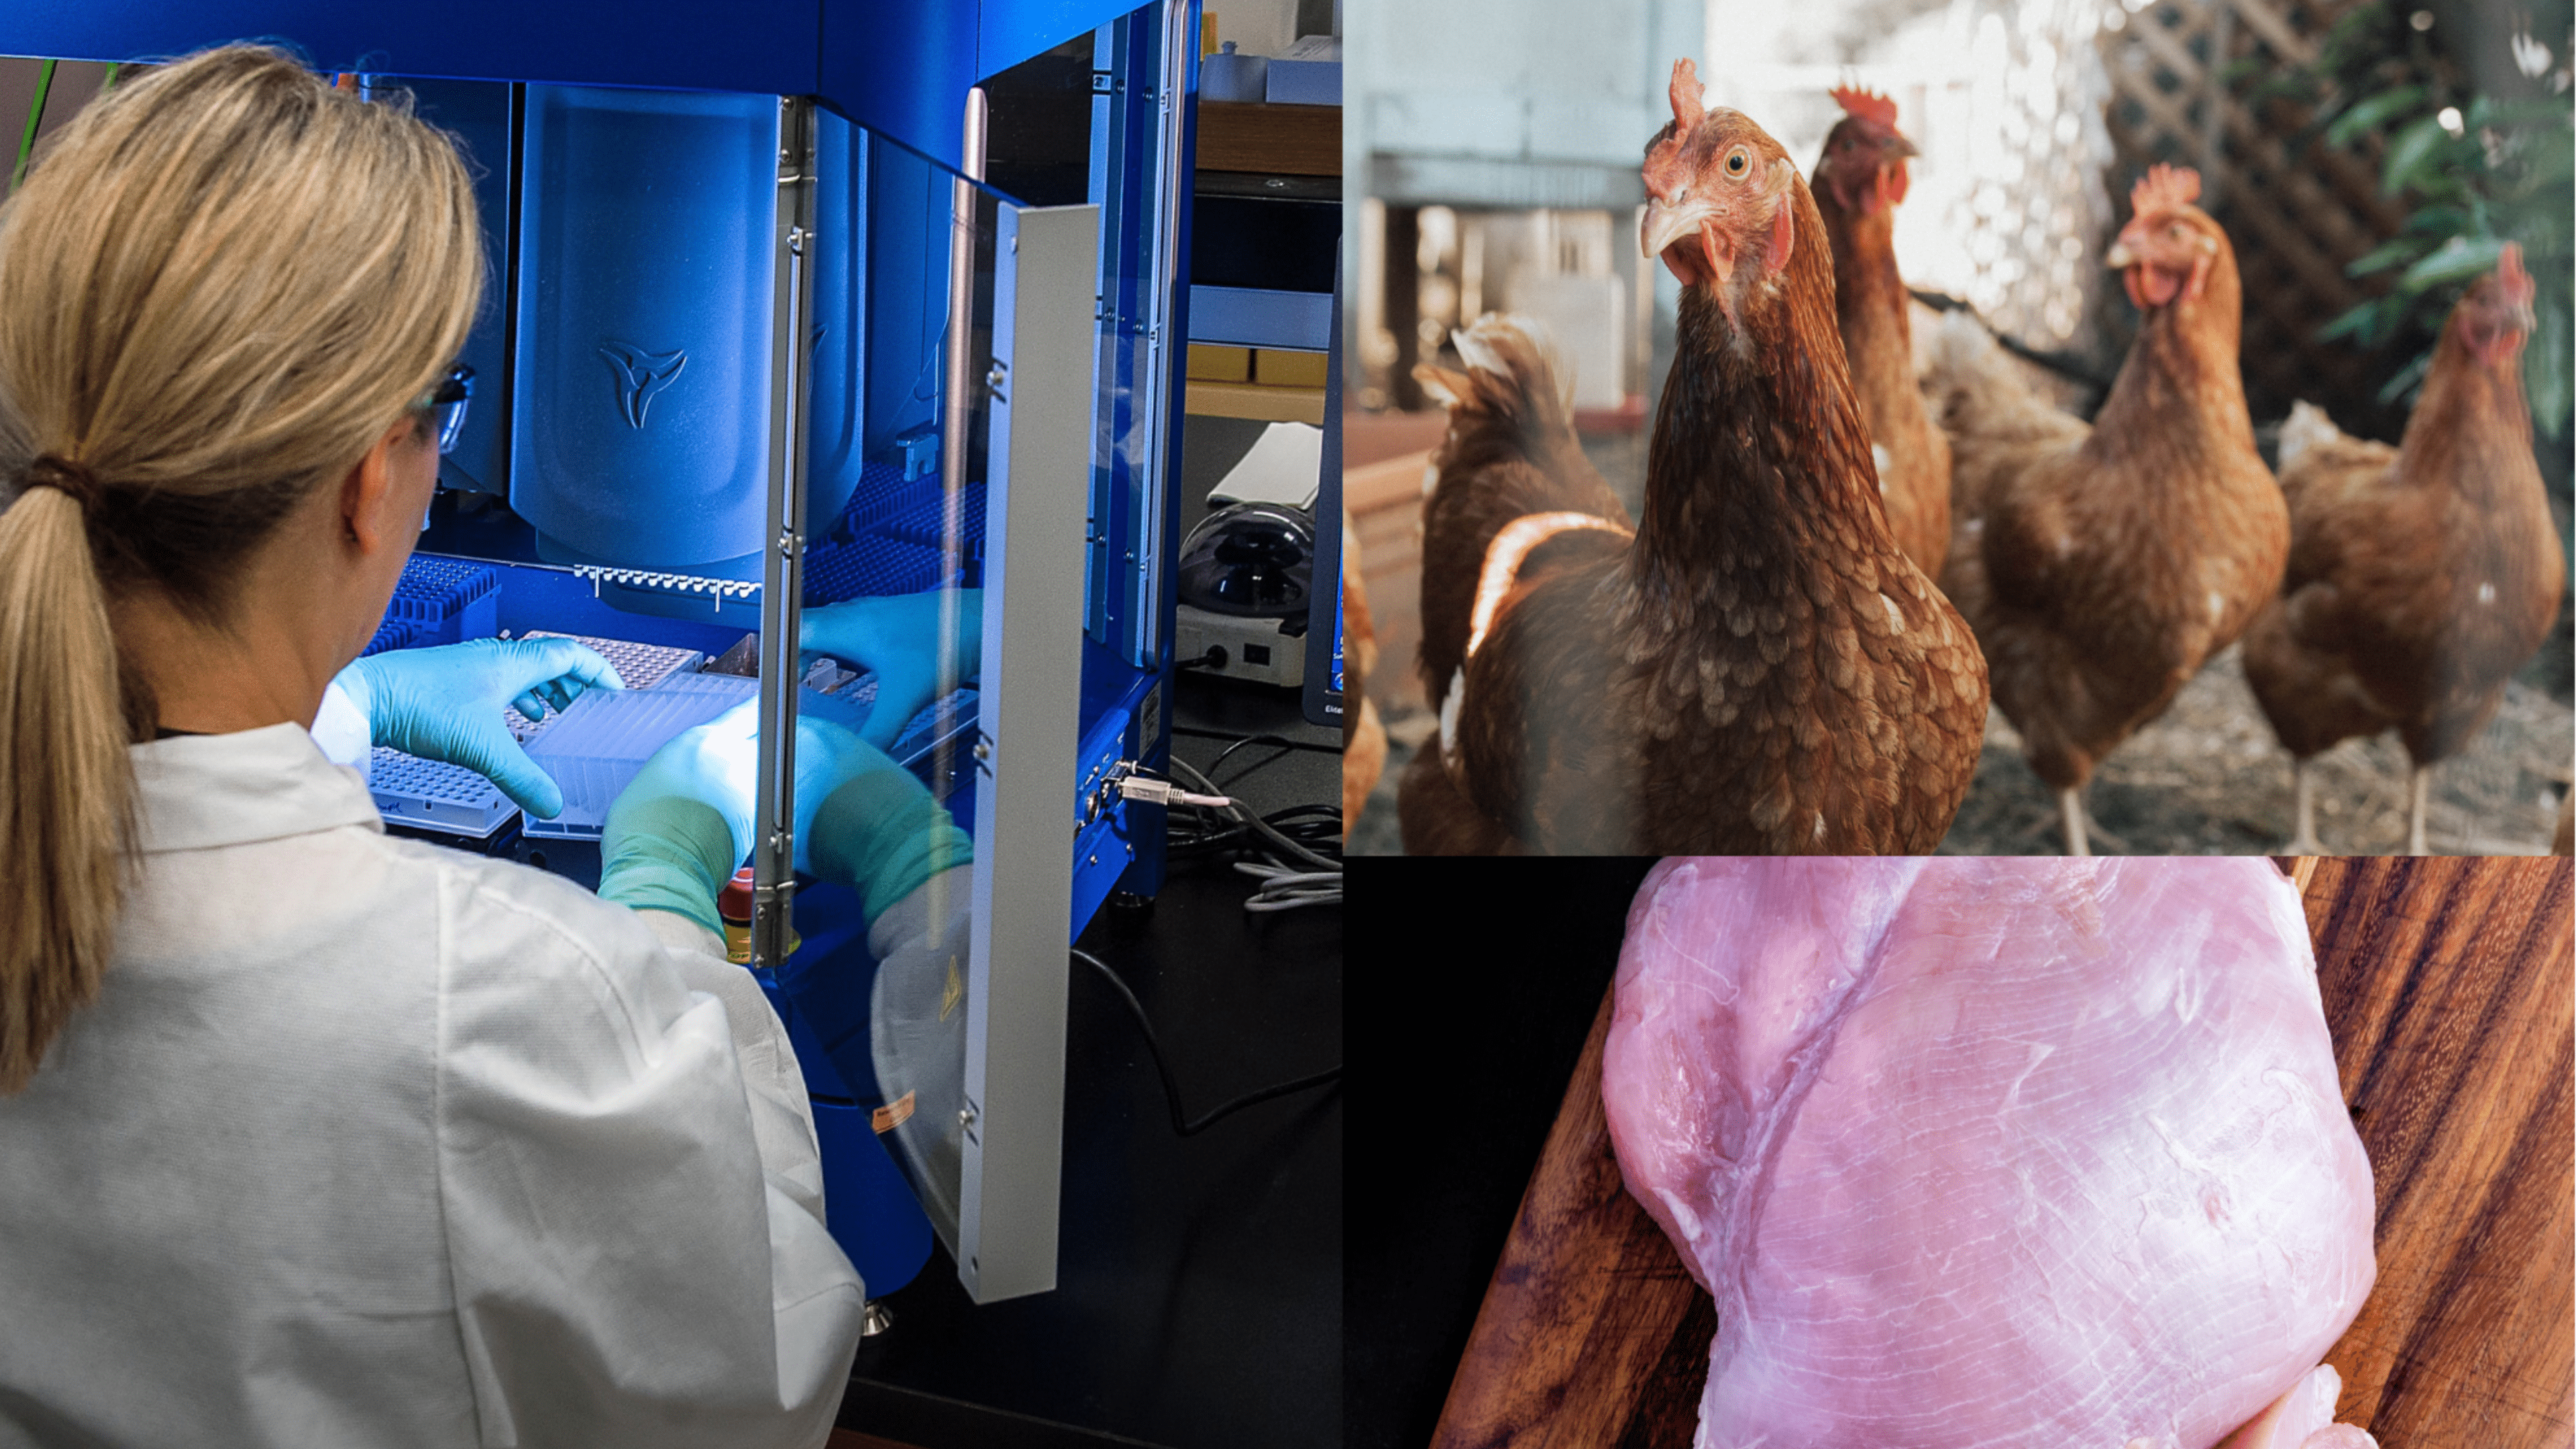 Lab-grown chicken